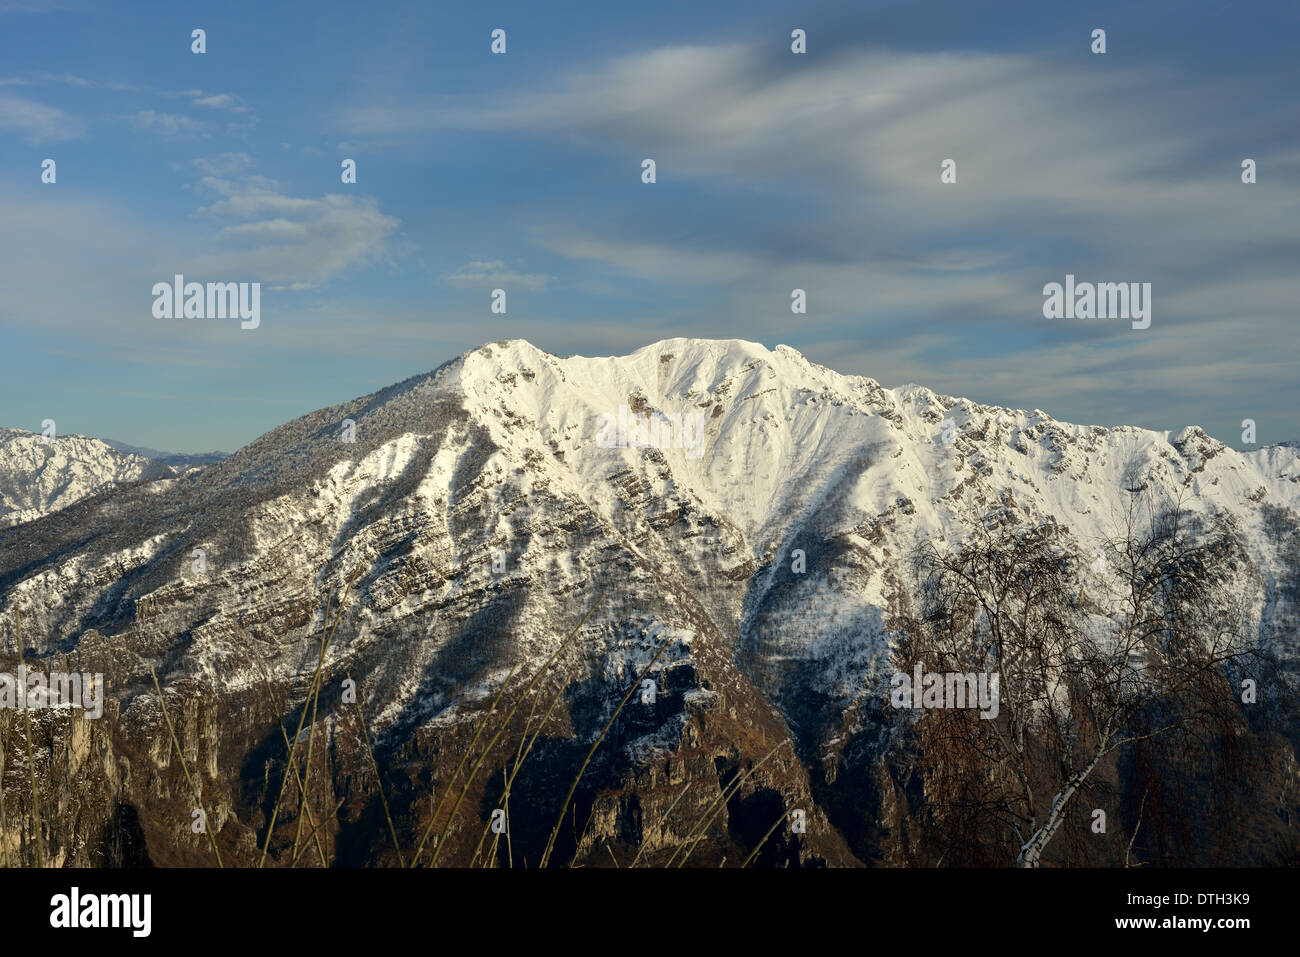 Paesaggio invernale del monte due mani (due mani montagna). Vista dalla Grigna meridionale. Foto Stock